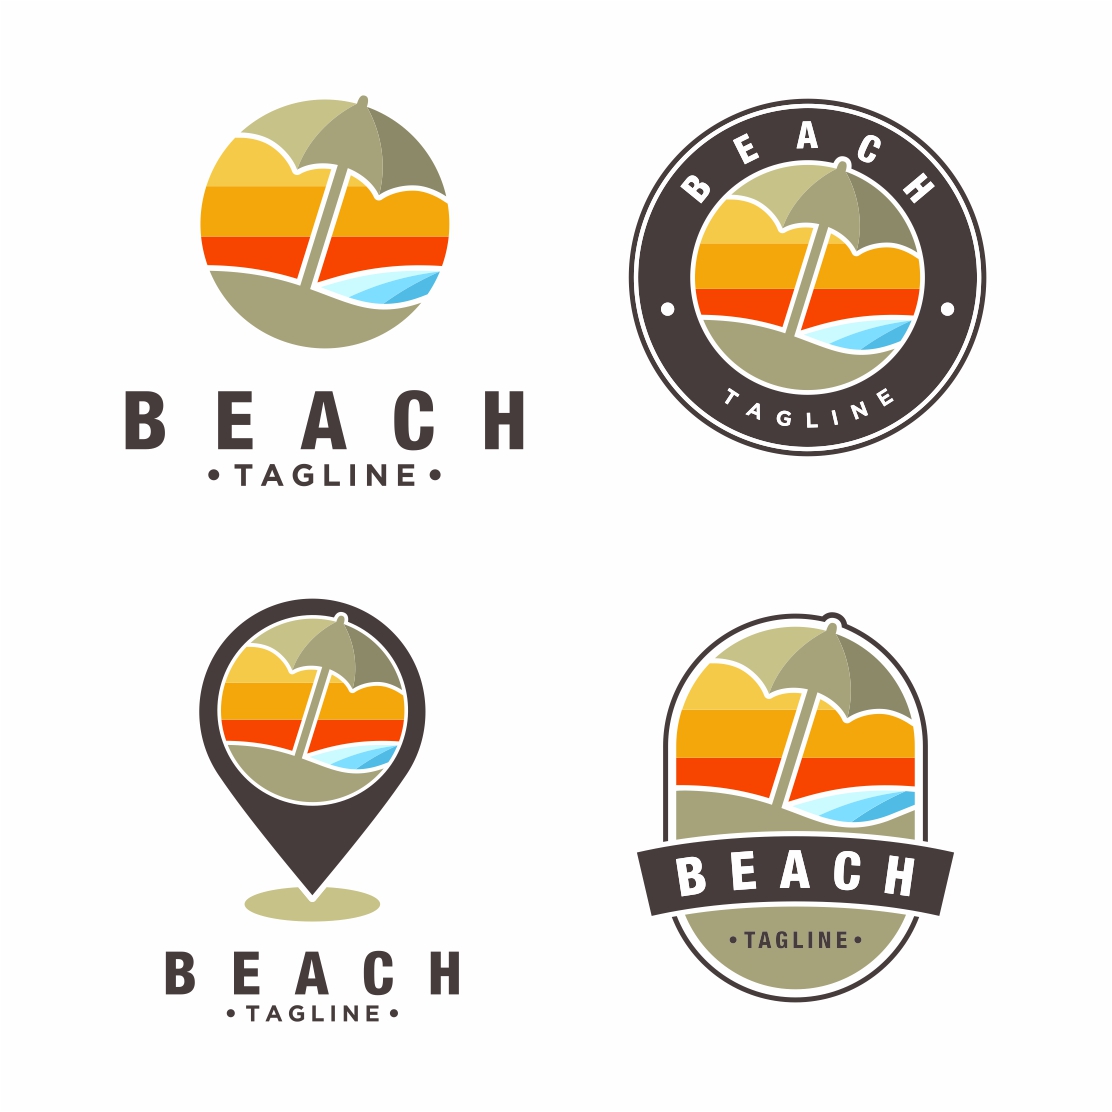 Beach logo design collection with beach umbrella Vector - only 10$ preview image.